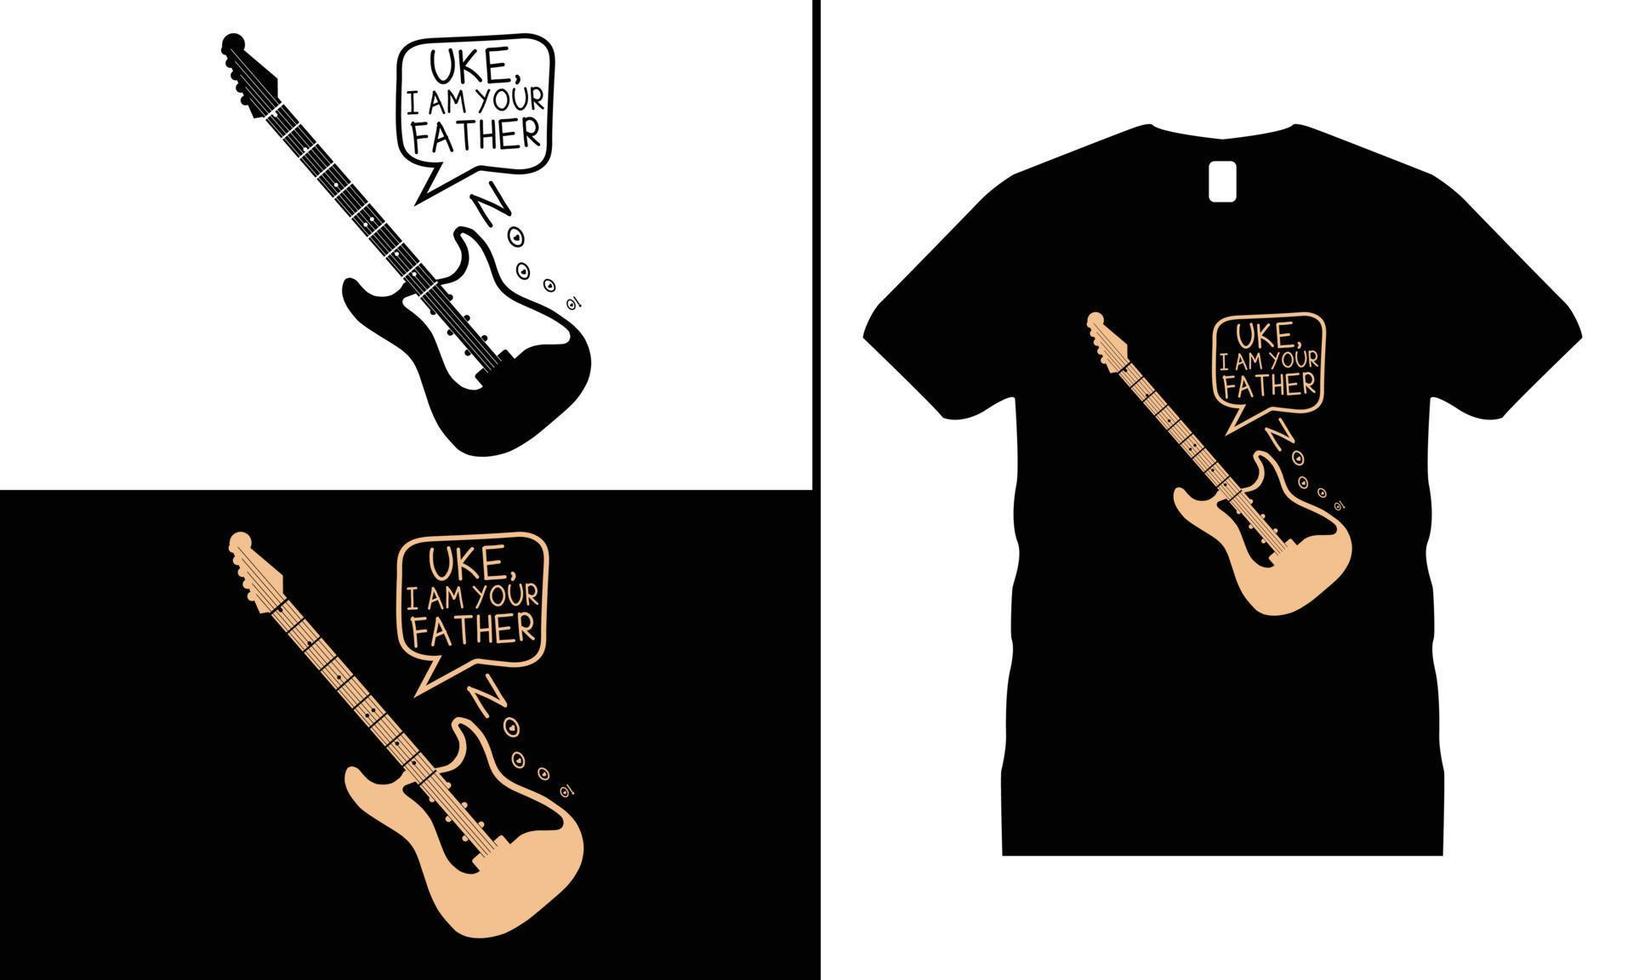 vetor de design de camiseta motivacional de música. use para camisetas, canecas, adesivos, etc.